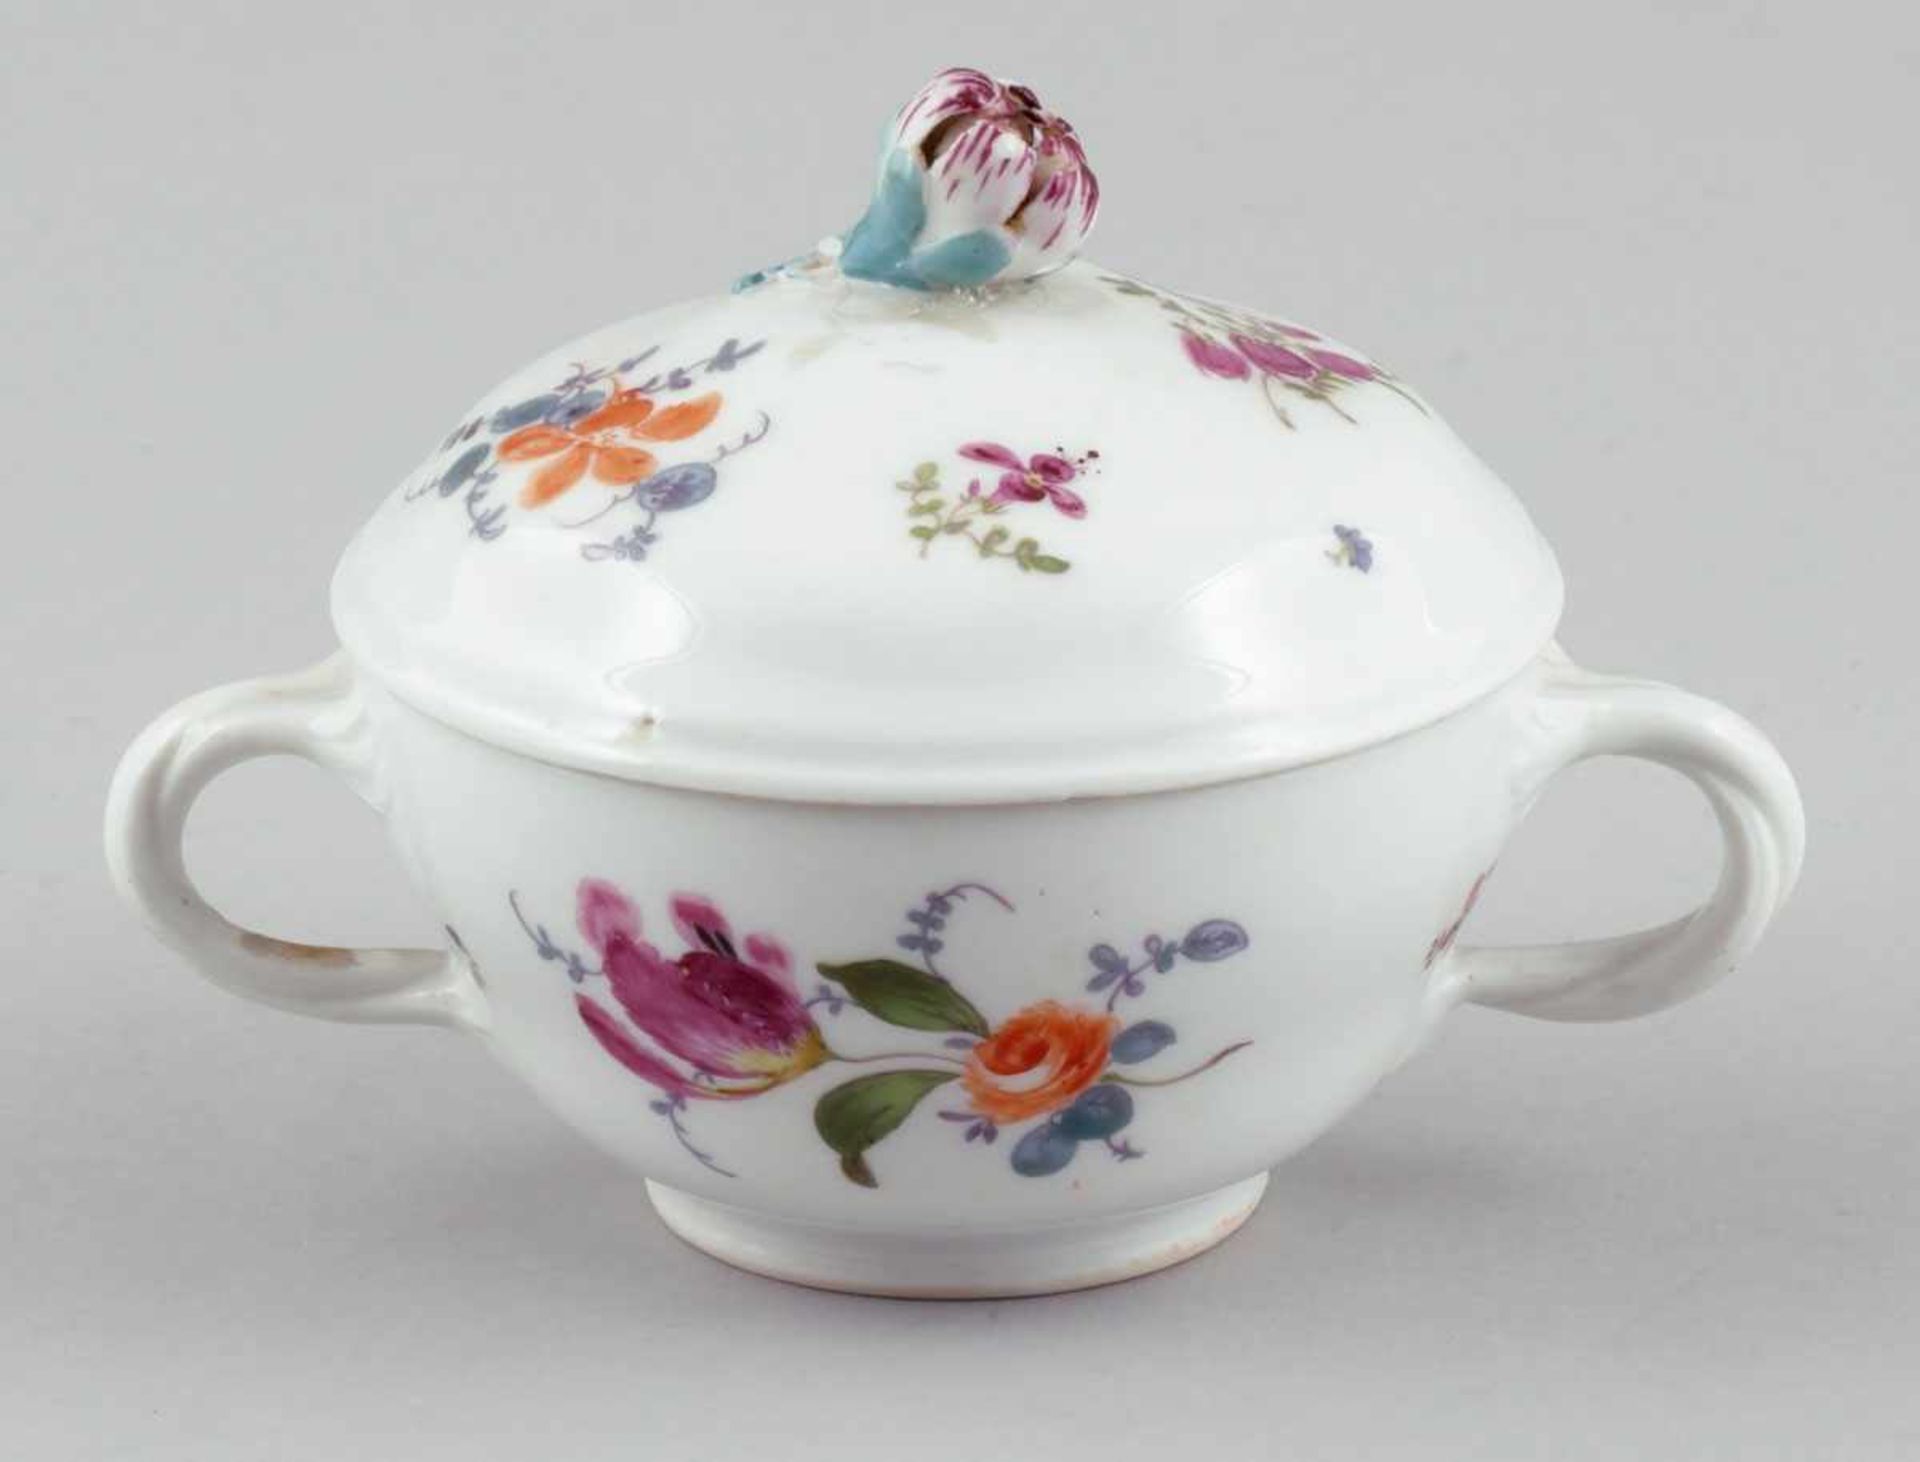 Suppentasse mit DeckelMeissen, um 1760. - Gegenüberliegende Blumen - Porzellan, weiß, glasiert.